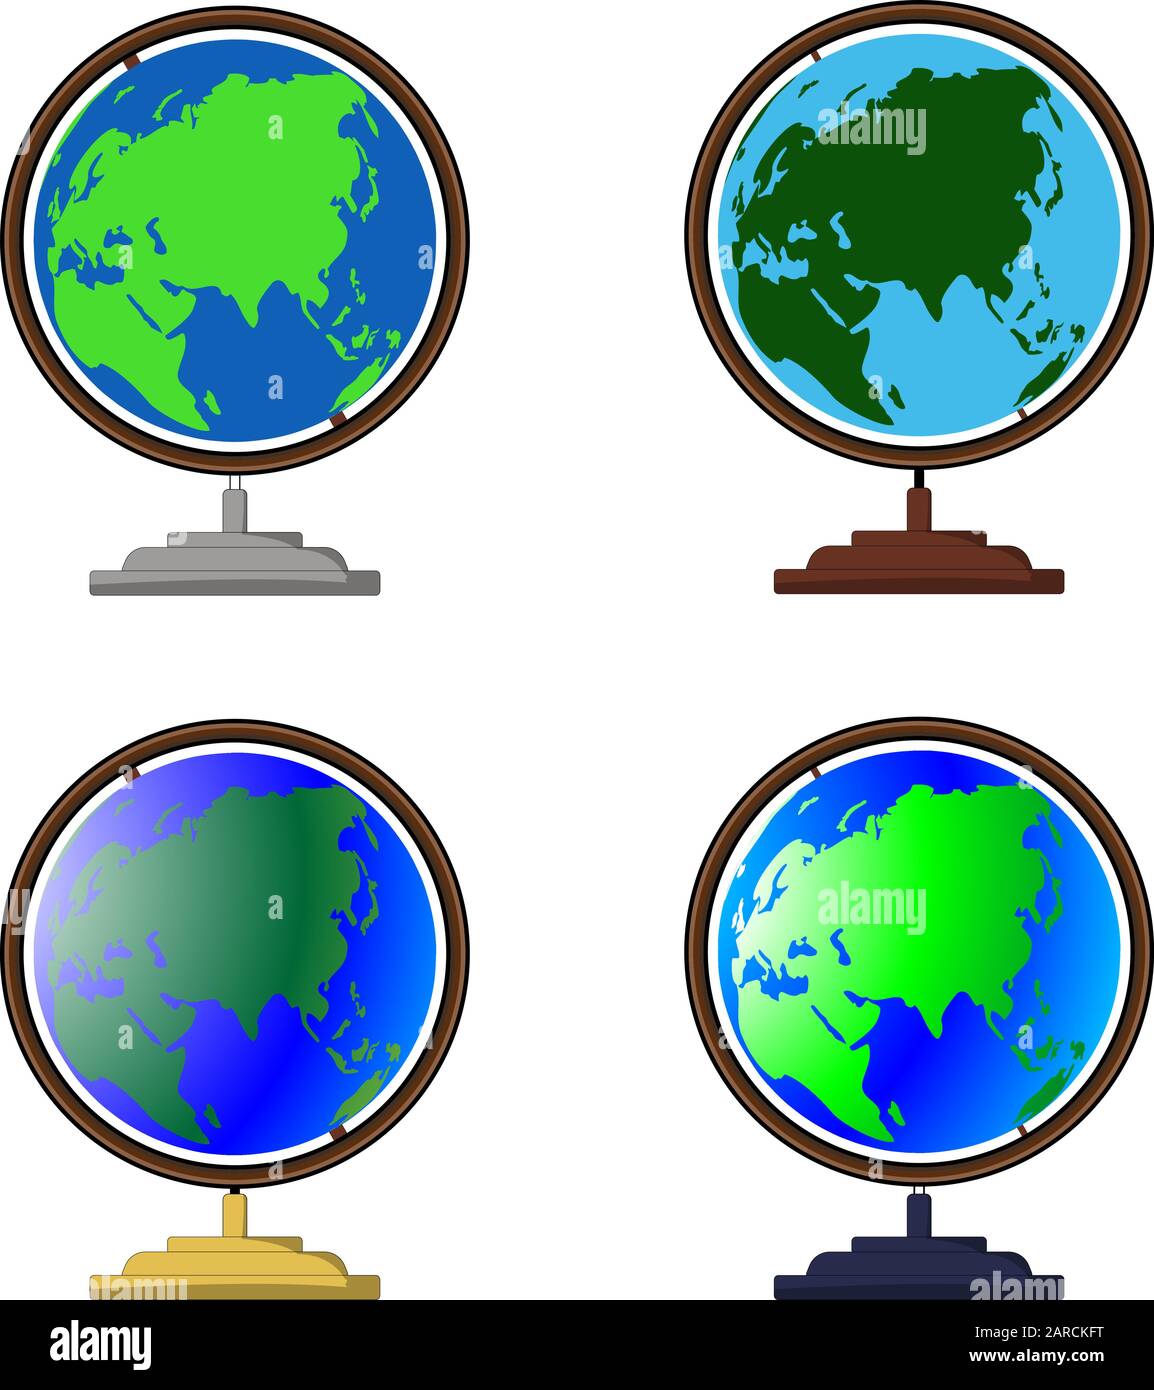 Vektor-Globus-Symbole der Welt. Ein Satz von Desktop-Globen hält, verschiedene Farben und Farbtöne aus. Globe Requisiten für Cartoon- und Animationsdekor. Stock Vektor